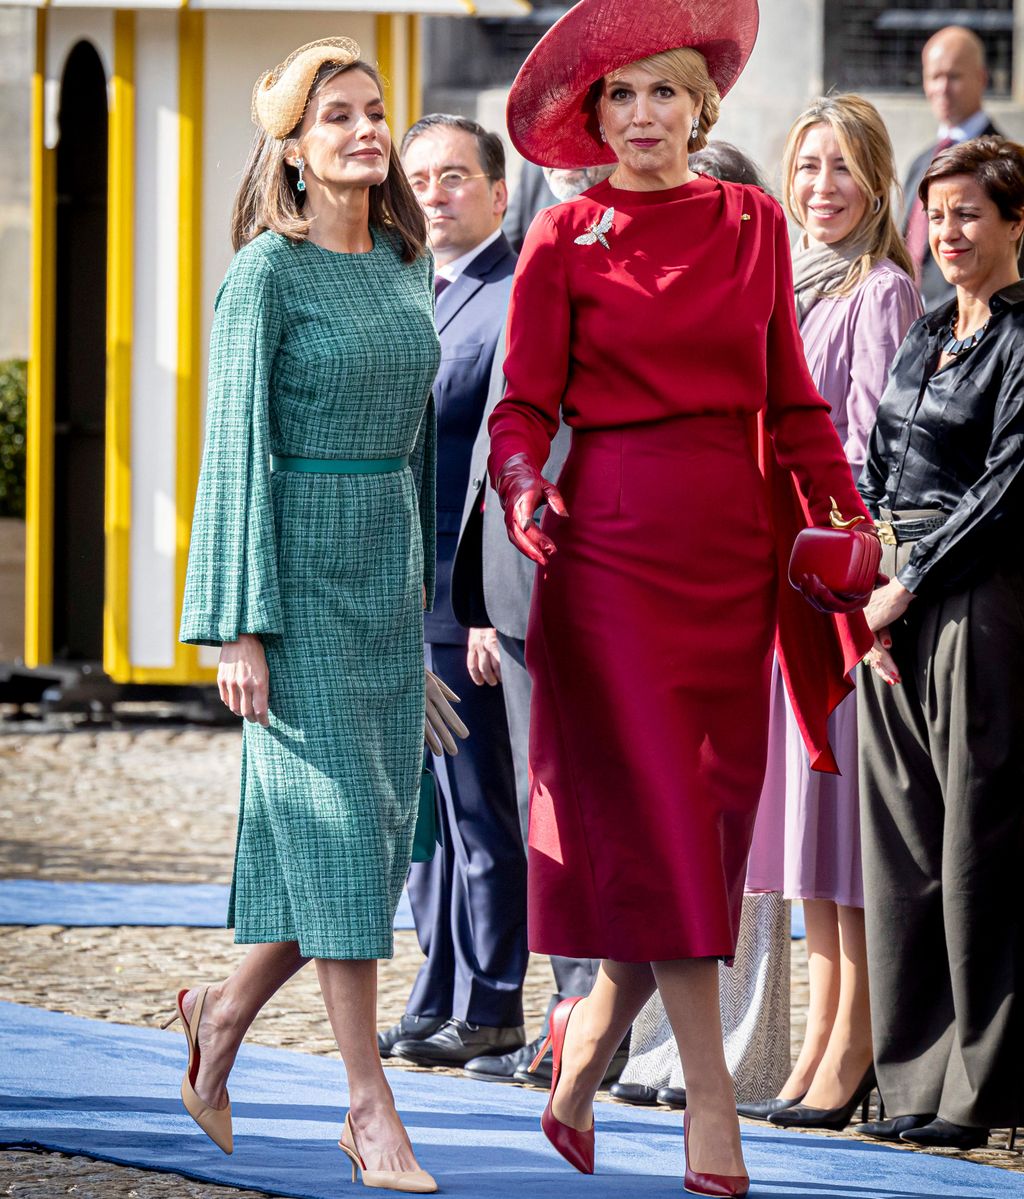 Entre Máxima de Holanda y la reina Letizia existe una estrecha relación de amistad